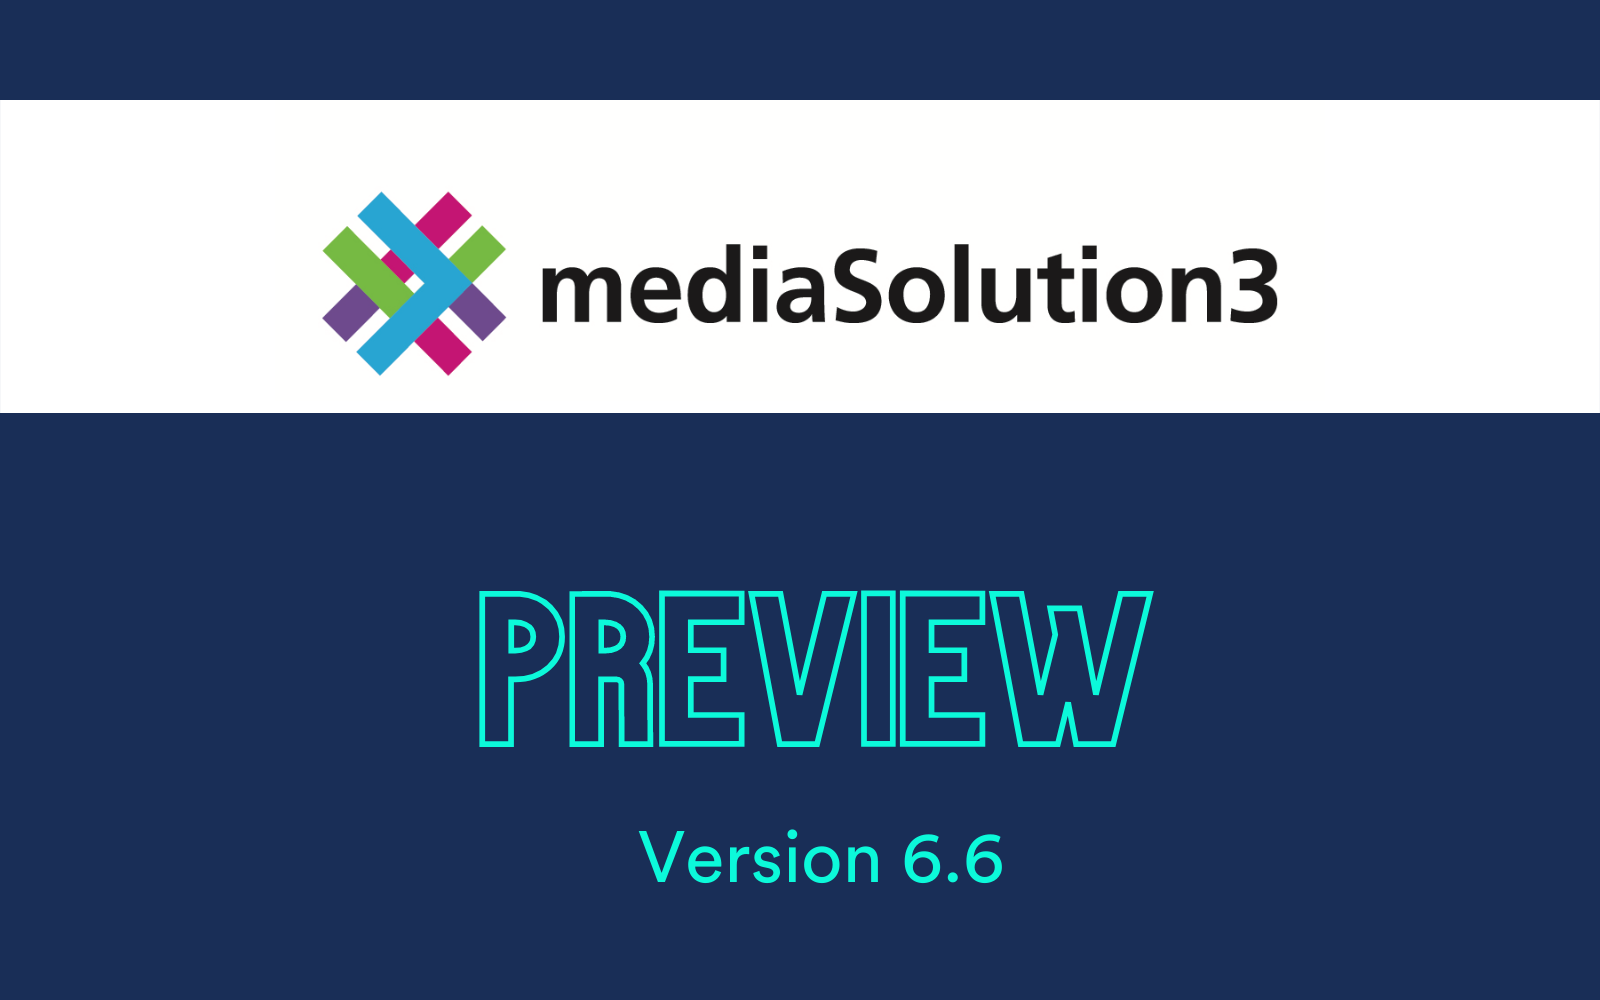 mediaSolution3 V 6.6